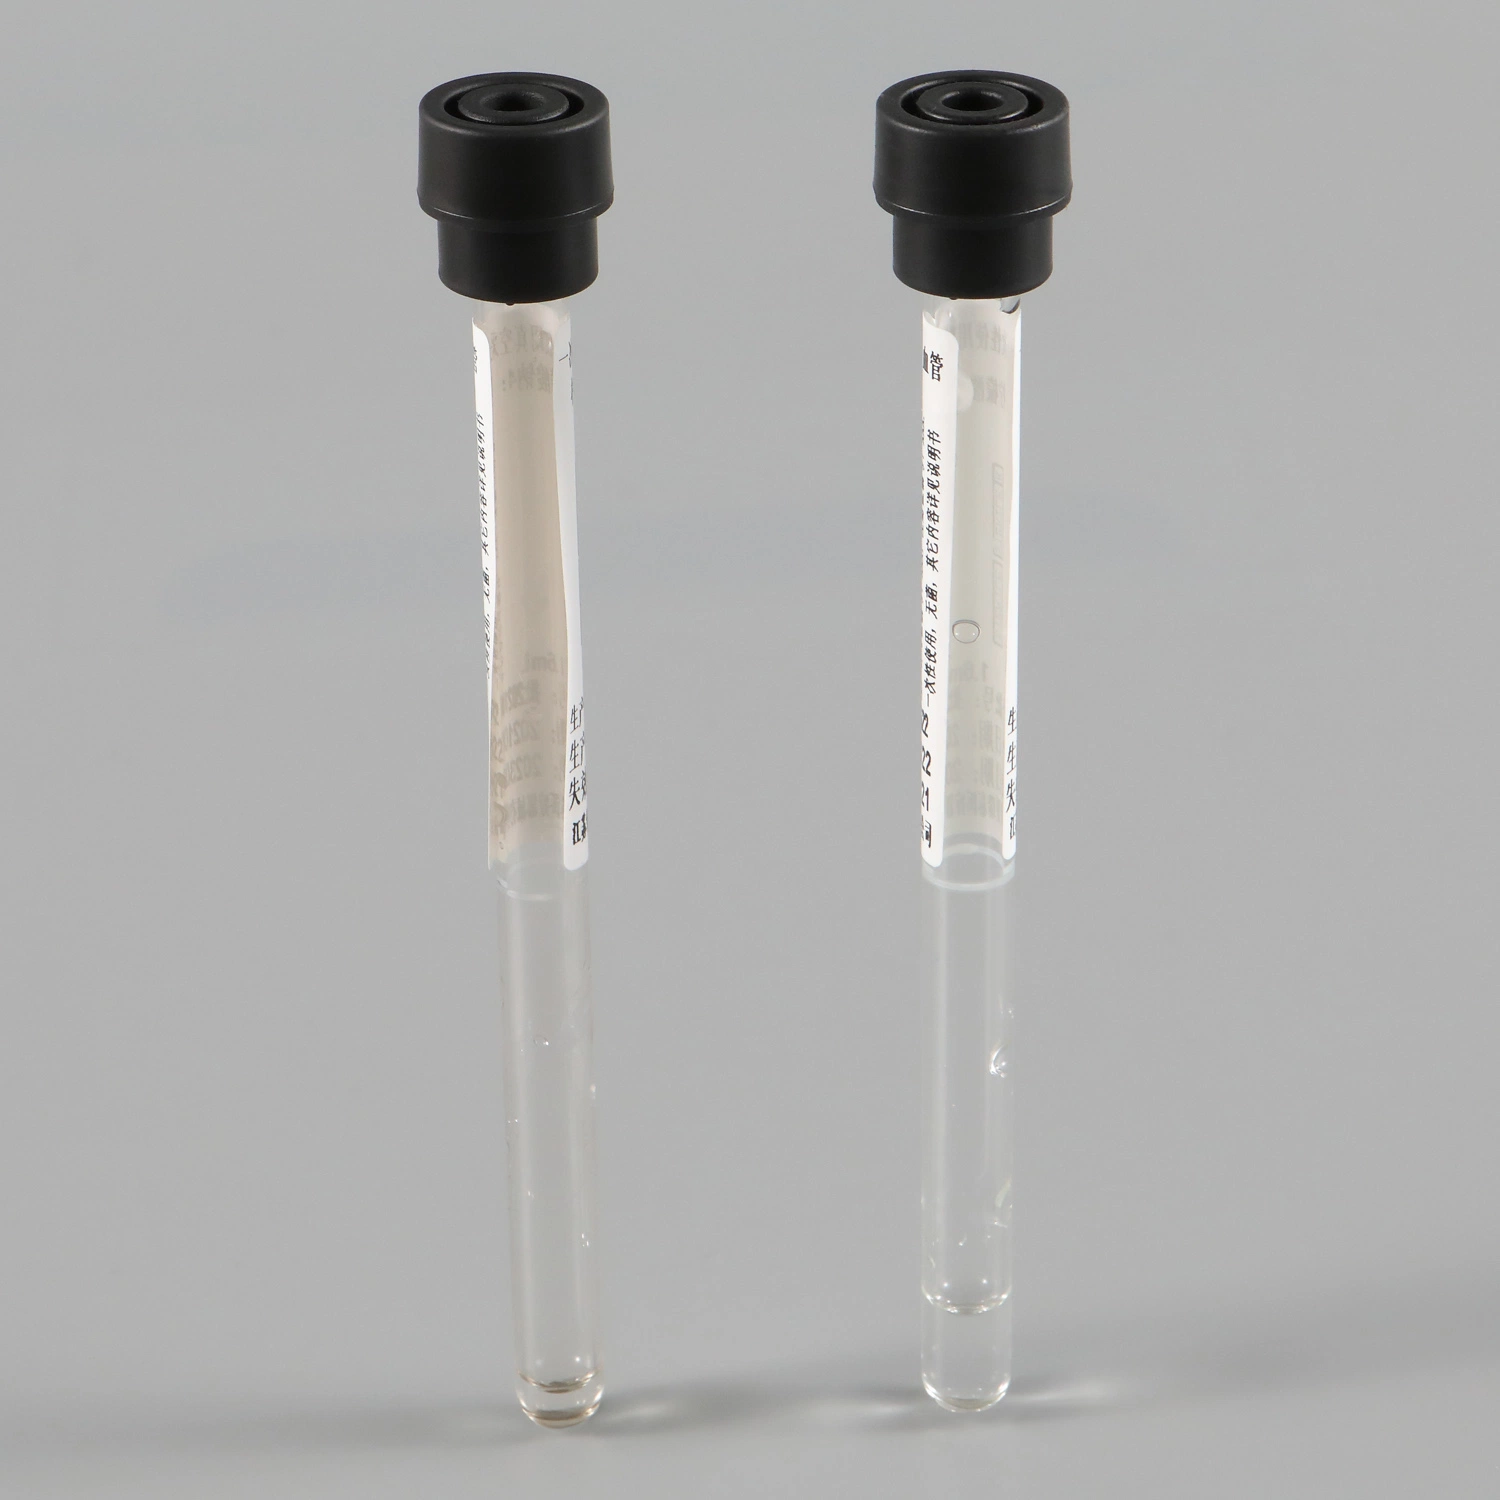 Einwegartikel Haustier/Glas 1-10ml Sammlung von Instrumenten Nadel Medizinprodukte Vakuum Blutgefäß